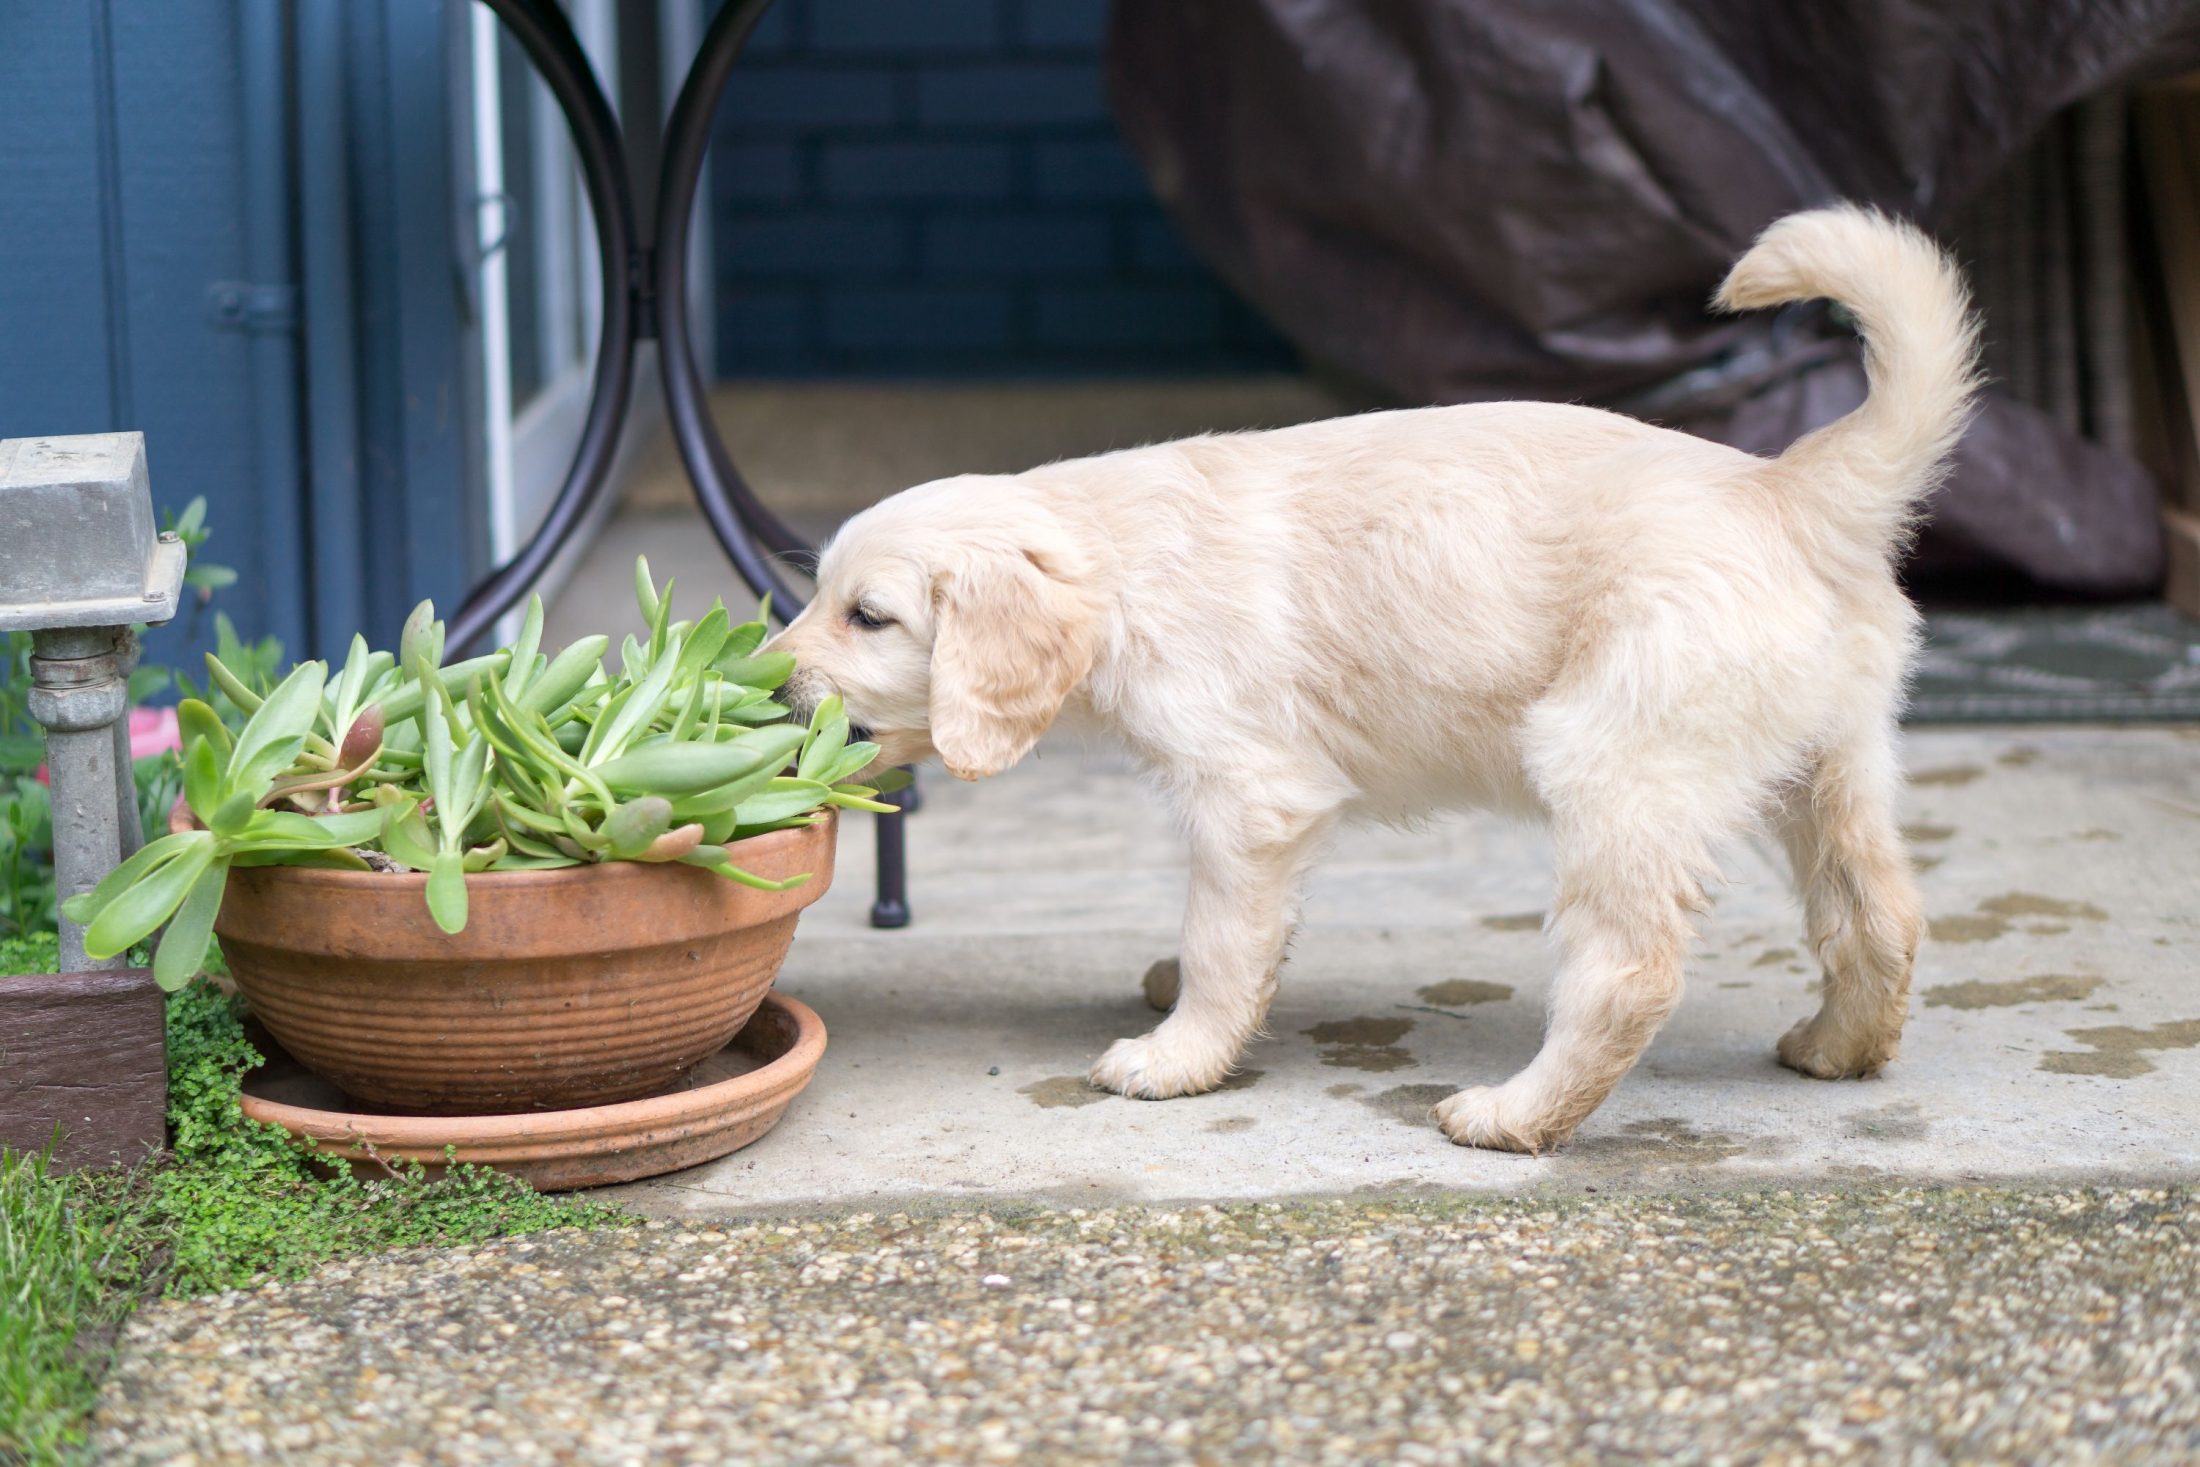 Dog eating plant.